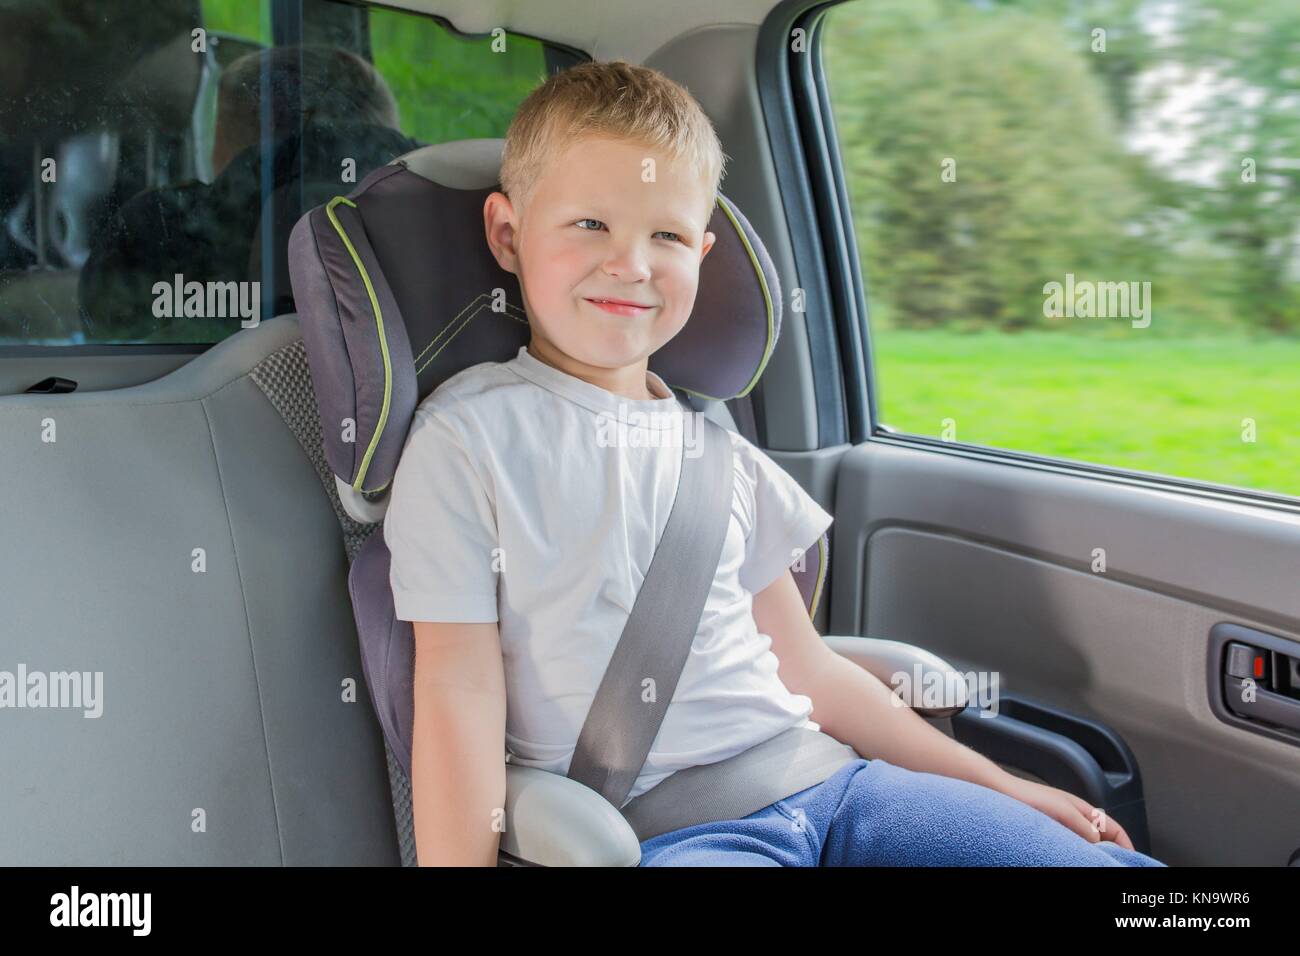 Junge sitzt in einem Auto in Sicherheit Stuhl befestigen, indem